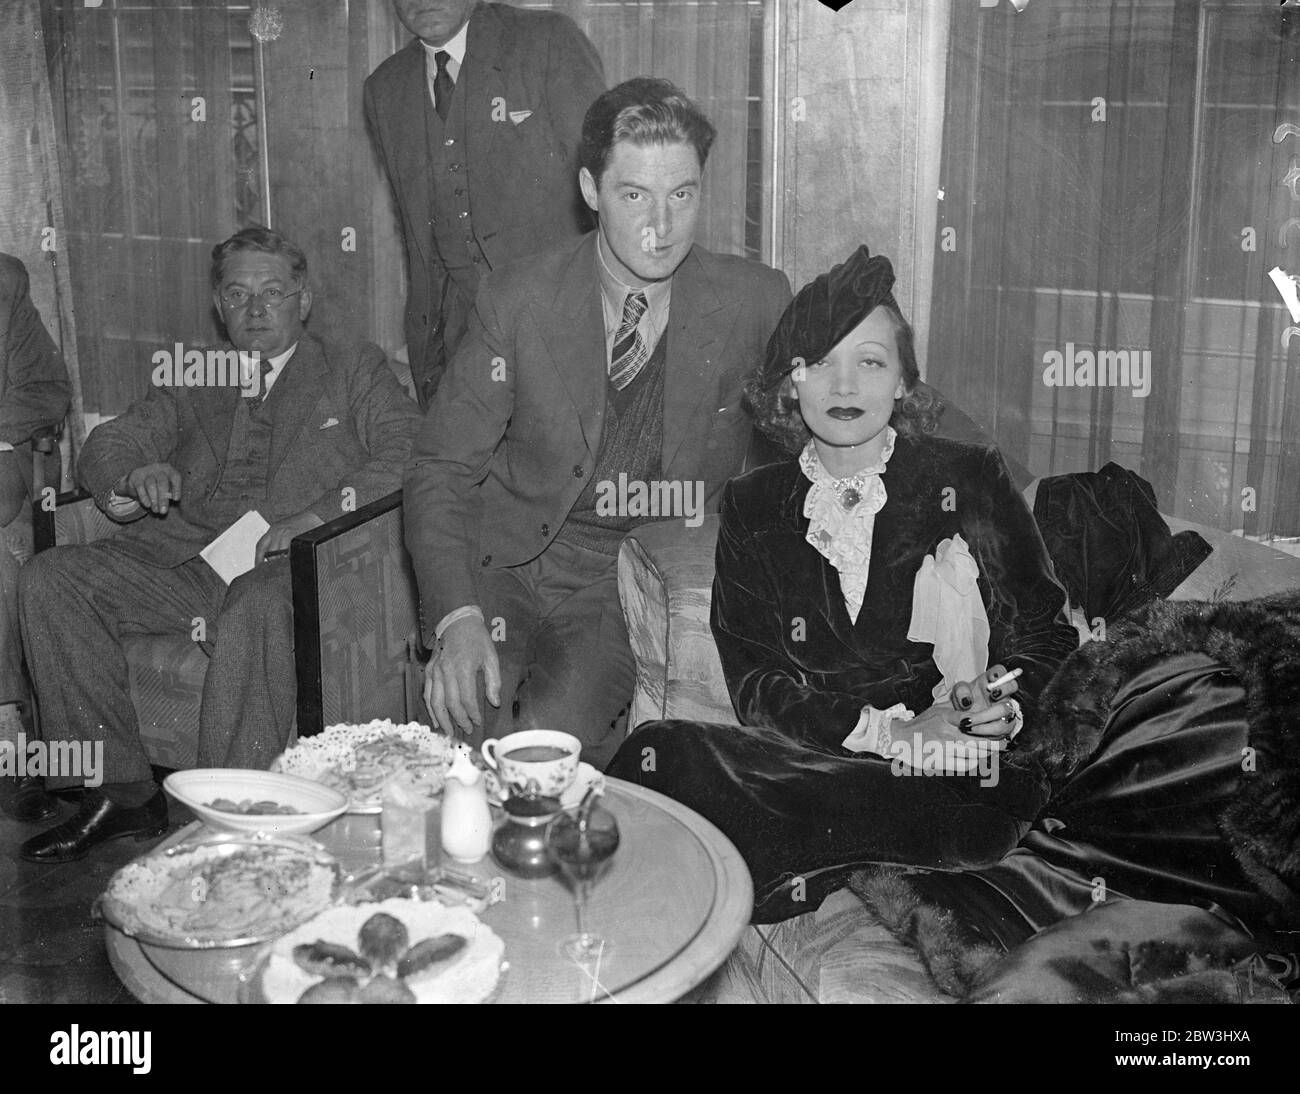 Marlene Dietrich gibt die Rezeption bei der Ankunft in London. Unmittelbar nach ihrer Ankunft in London aus Hollywood, Marlene Diatrich, die deutsche Filmschauspielerin, gab einen Empfang in Claridge ' s, Brook Street, Miss Dietrich ist in London angekommen, um einen Film in britischen Studios zu machen. Sie wird begleitet von ihrem Mann Herr Rudolph Sieber. Foto zeigt, Marlene Dietrich mit Robert Donat, dem englischen ilm Schauspieler bei Claridge. 30 Juli 1936 Stockfoto